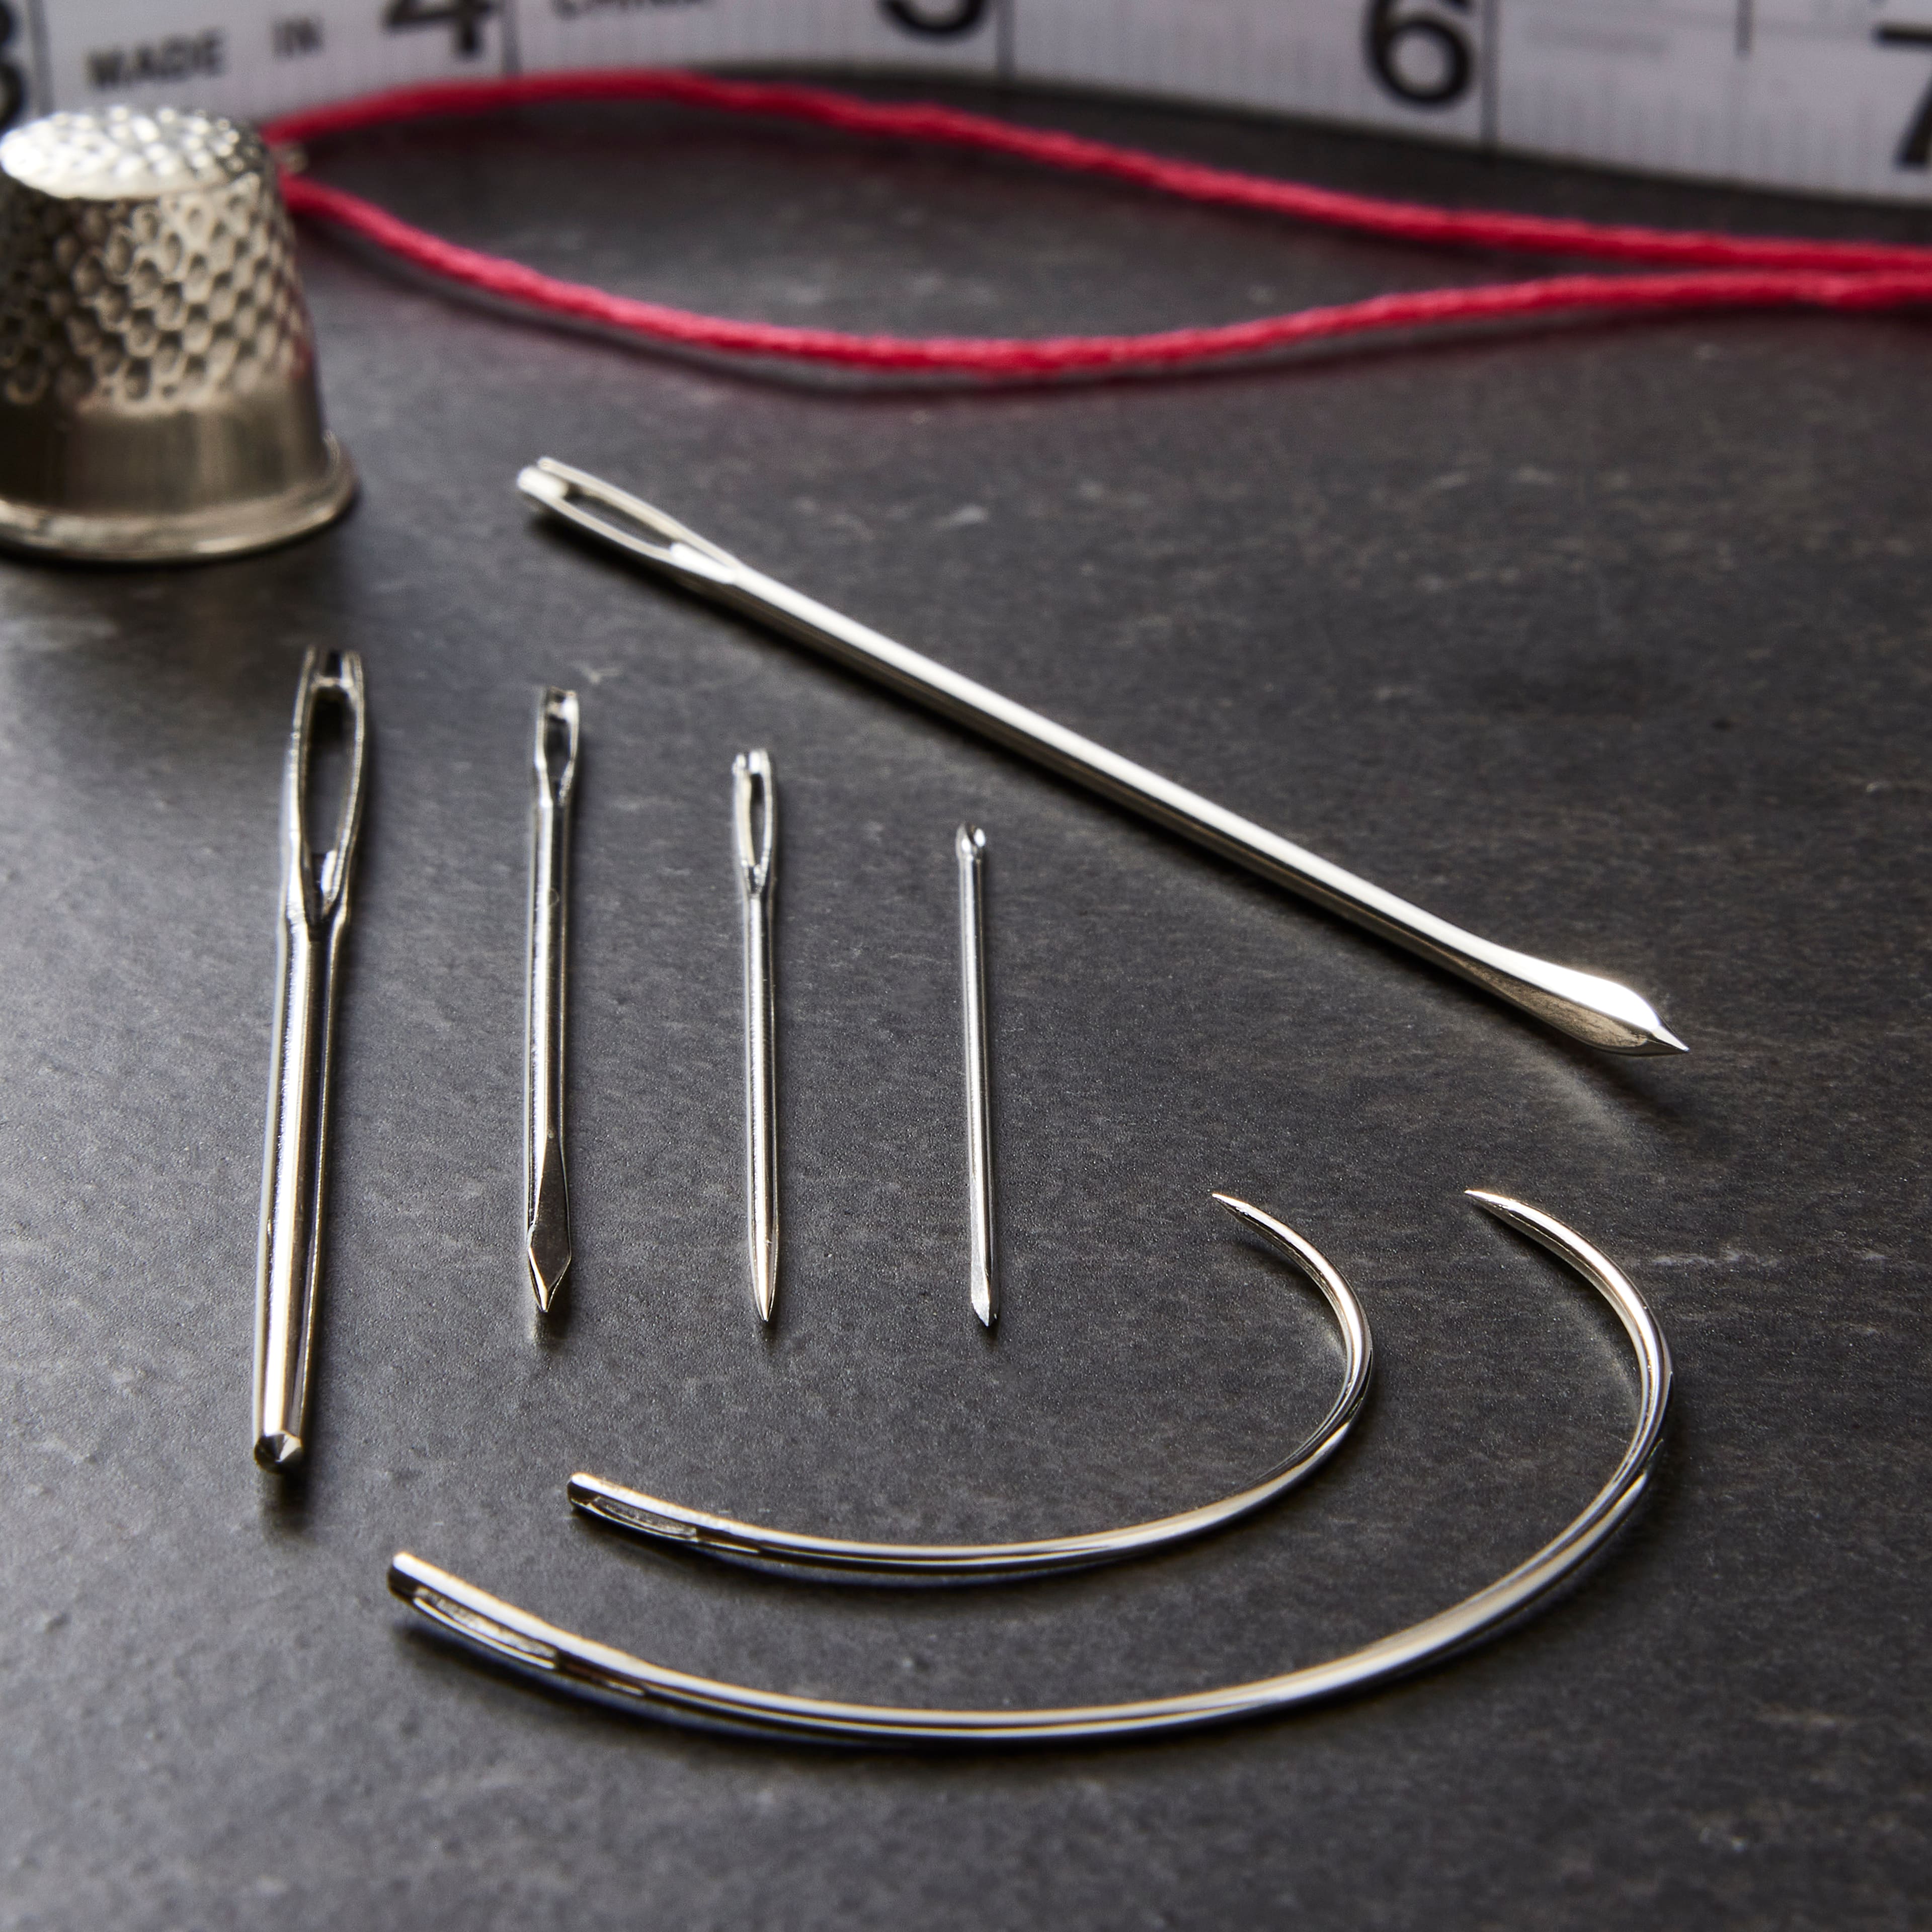 Repair Needles by Loops & Threads | Michaels